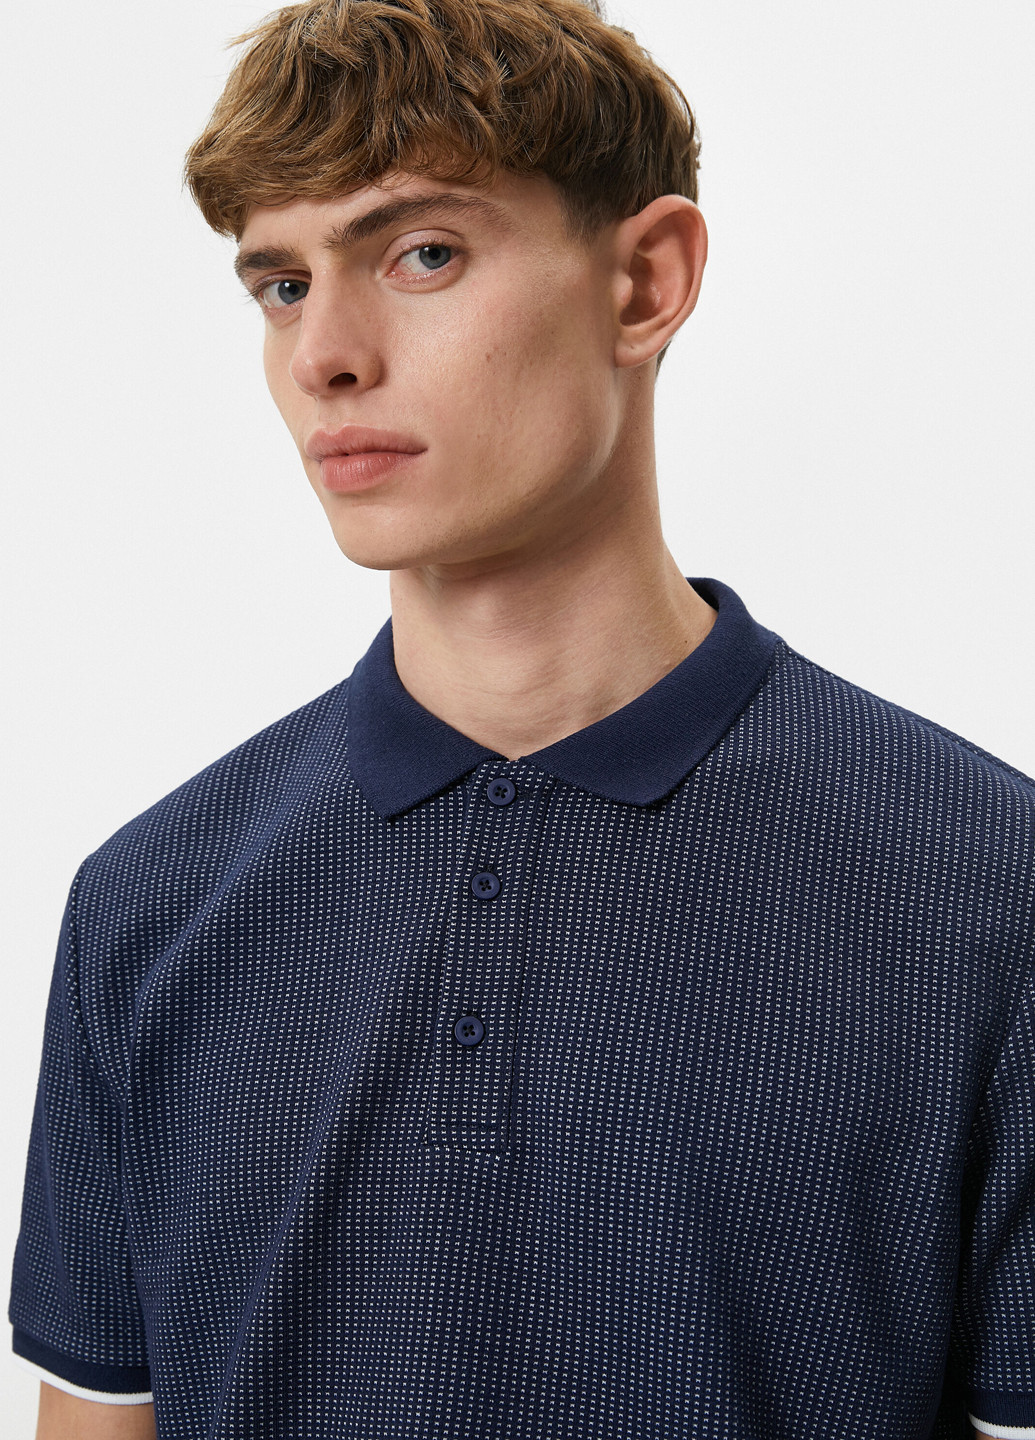 Темно-синяя футболка-поло для мужчин KOTON с геометрическим узором